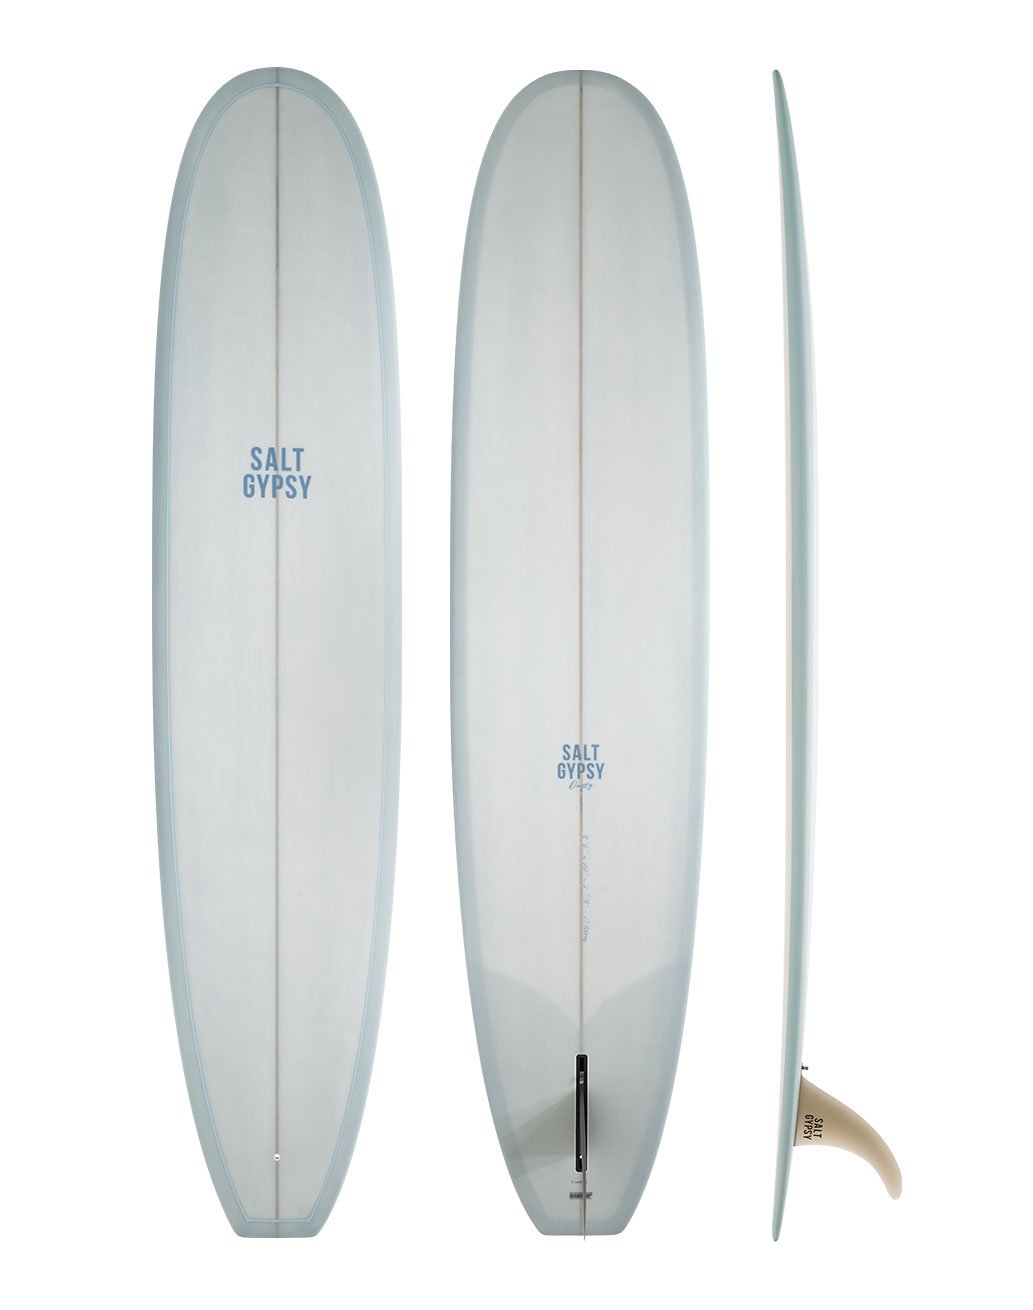 Salt Gypsy Surfboards Dusty - vintage blue colored longboard